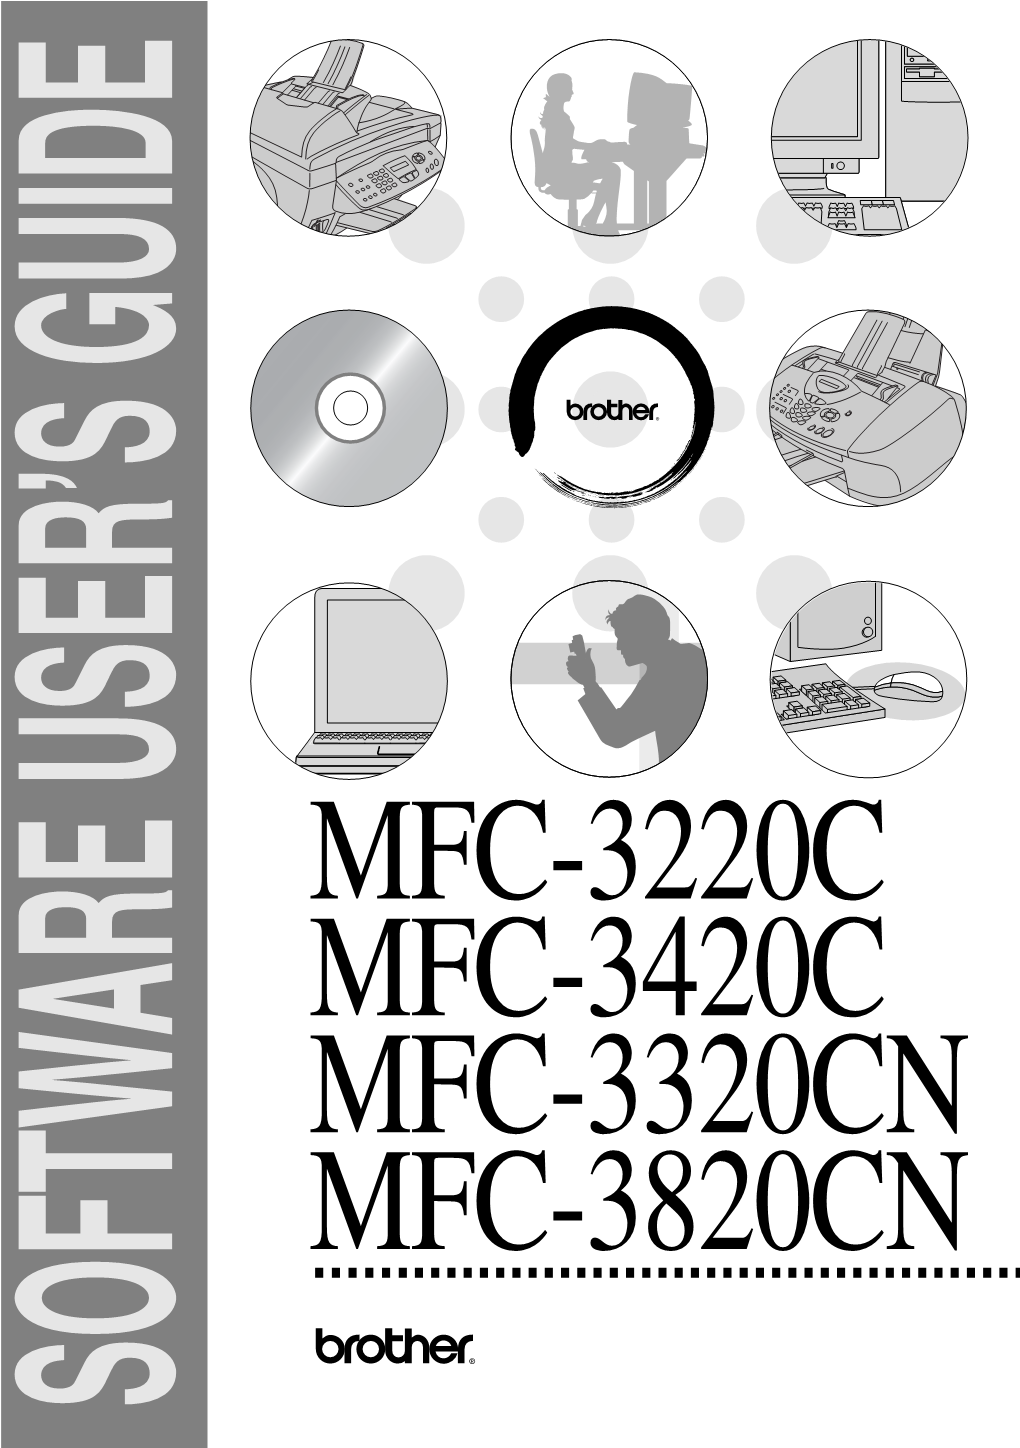 Mfc-3220C Mfc-3420C Mfc-3320Cn Mfc-3820Cn